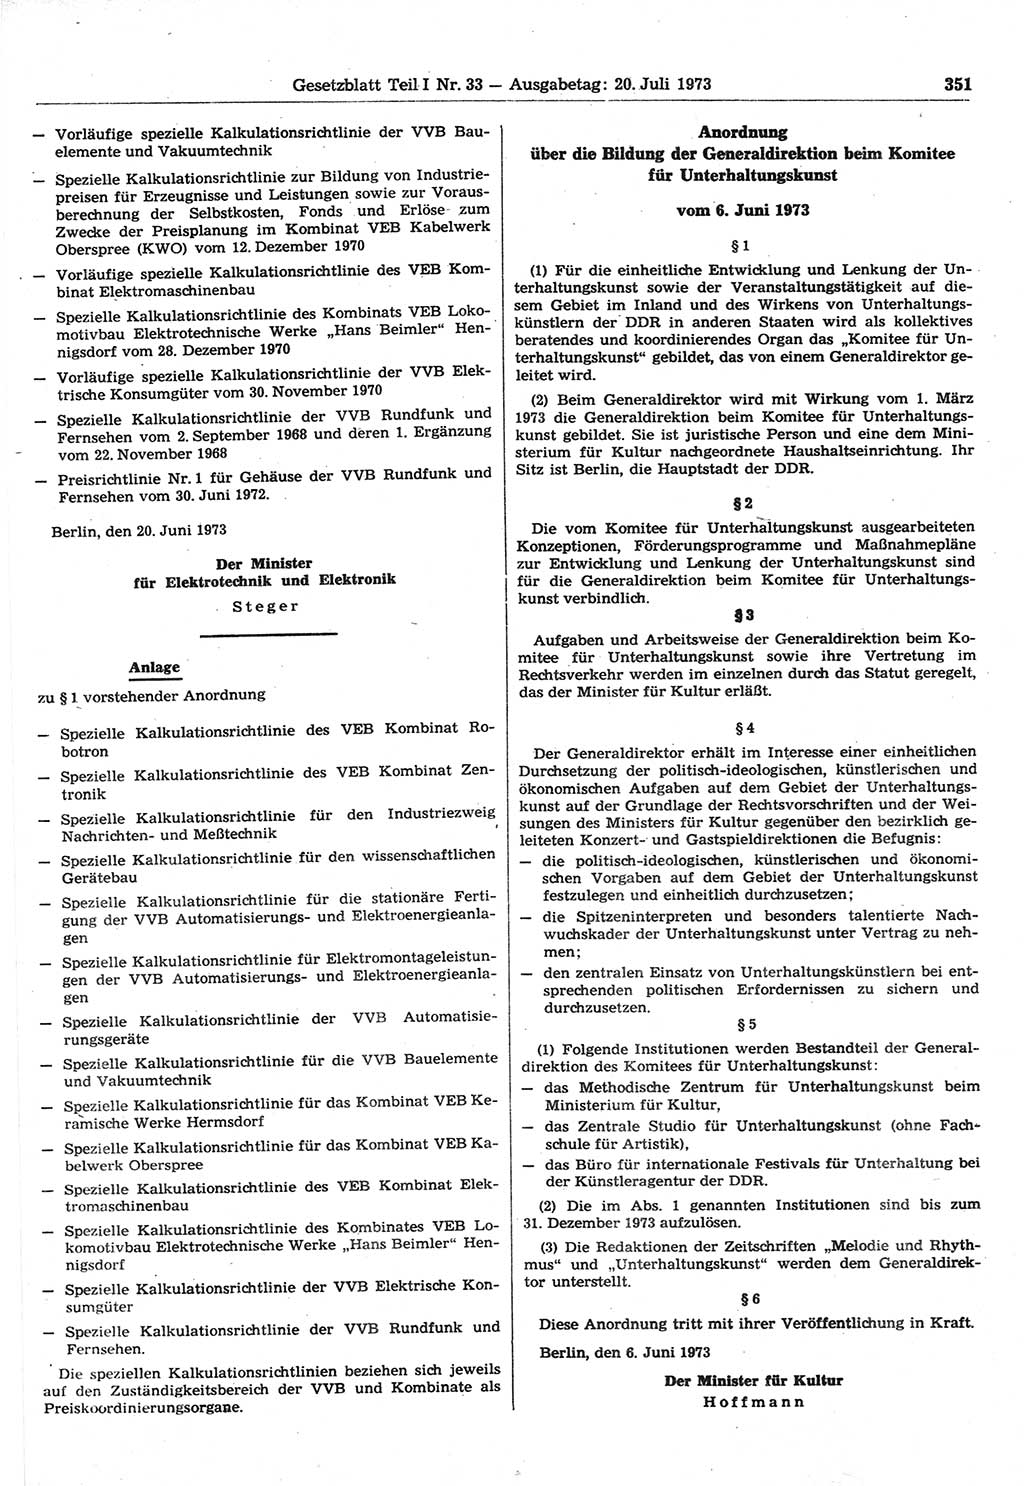 Gesetzblatt (GBl.) der Deutschen Demokratischen Republik (DDR) Teil Ⅰ 1973, Seite 351 (GBl. DDR Ⅰ 1973, S. 351)